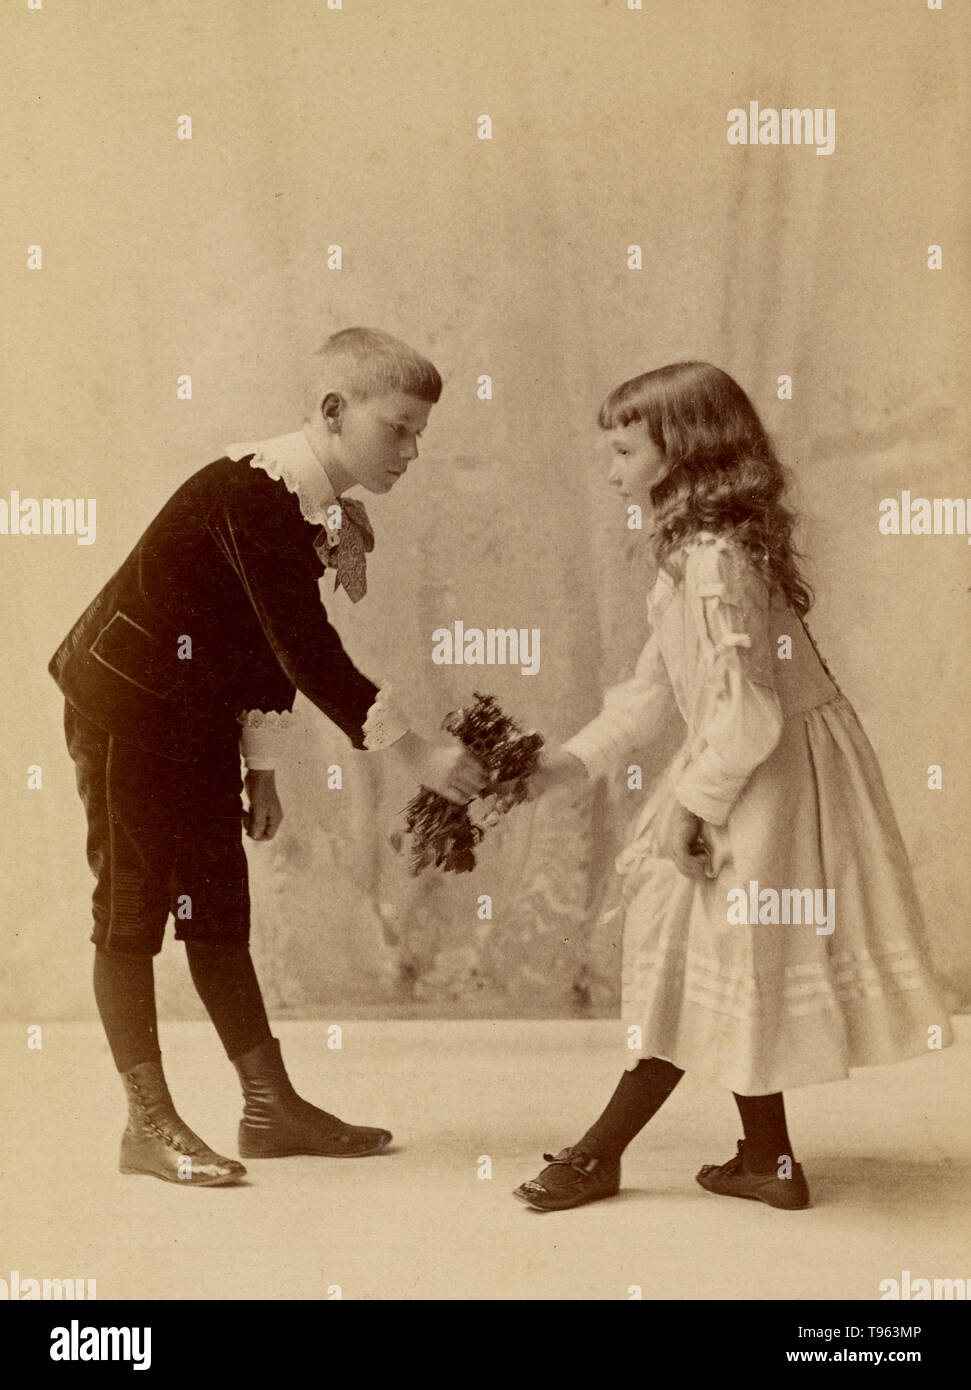 Junge Verbeugung und präsentiert einen Strauß zu einem curtseying, junges Mädchen. George H. Hastings, Fotograf (Amerikanische, ca. 1849 - 1931). Eiklar Silber drucken, 1880. Stockfoto